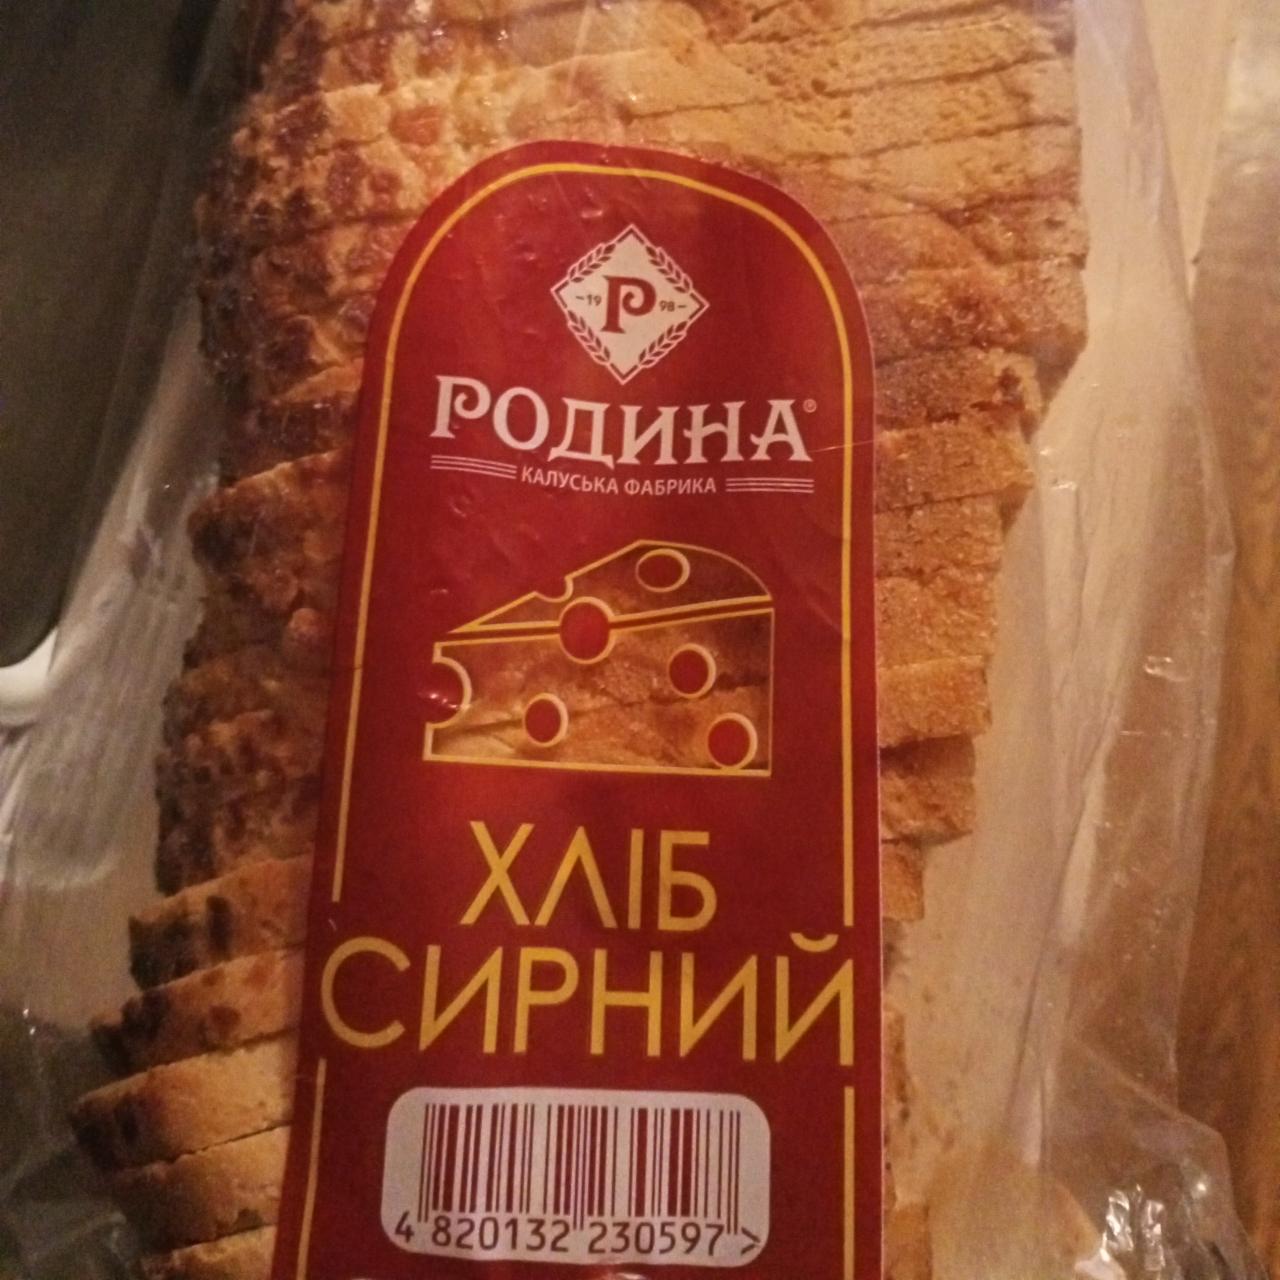 Фото - Хлеб сырный Калуська фабрика Родина